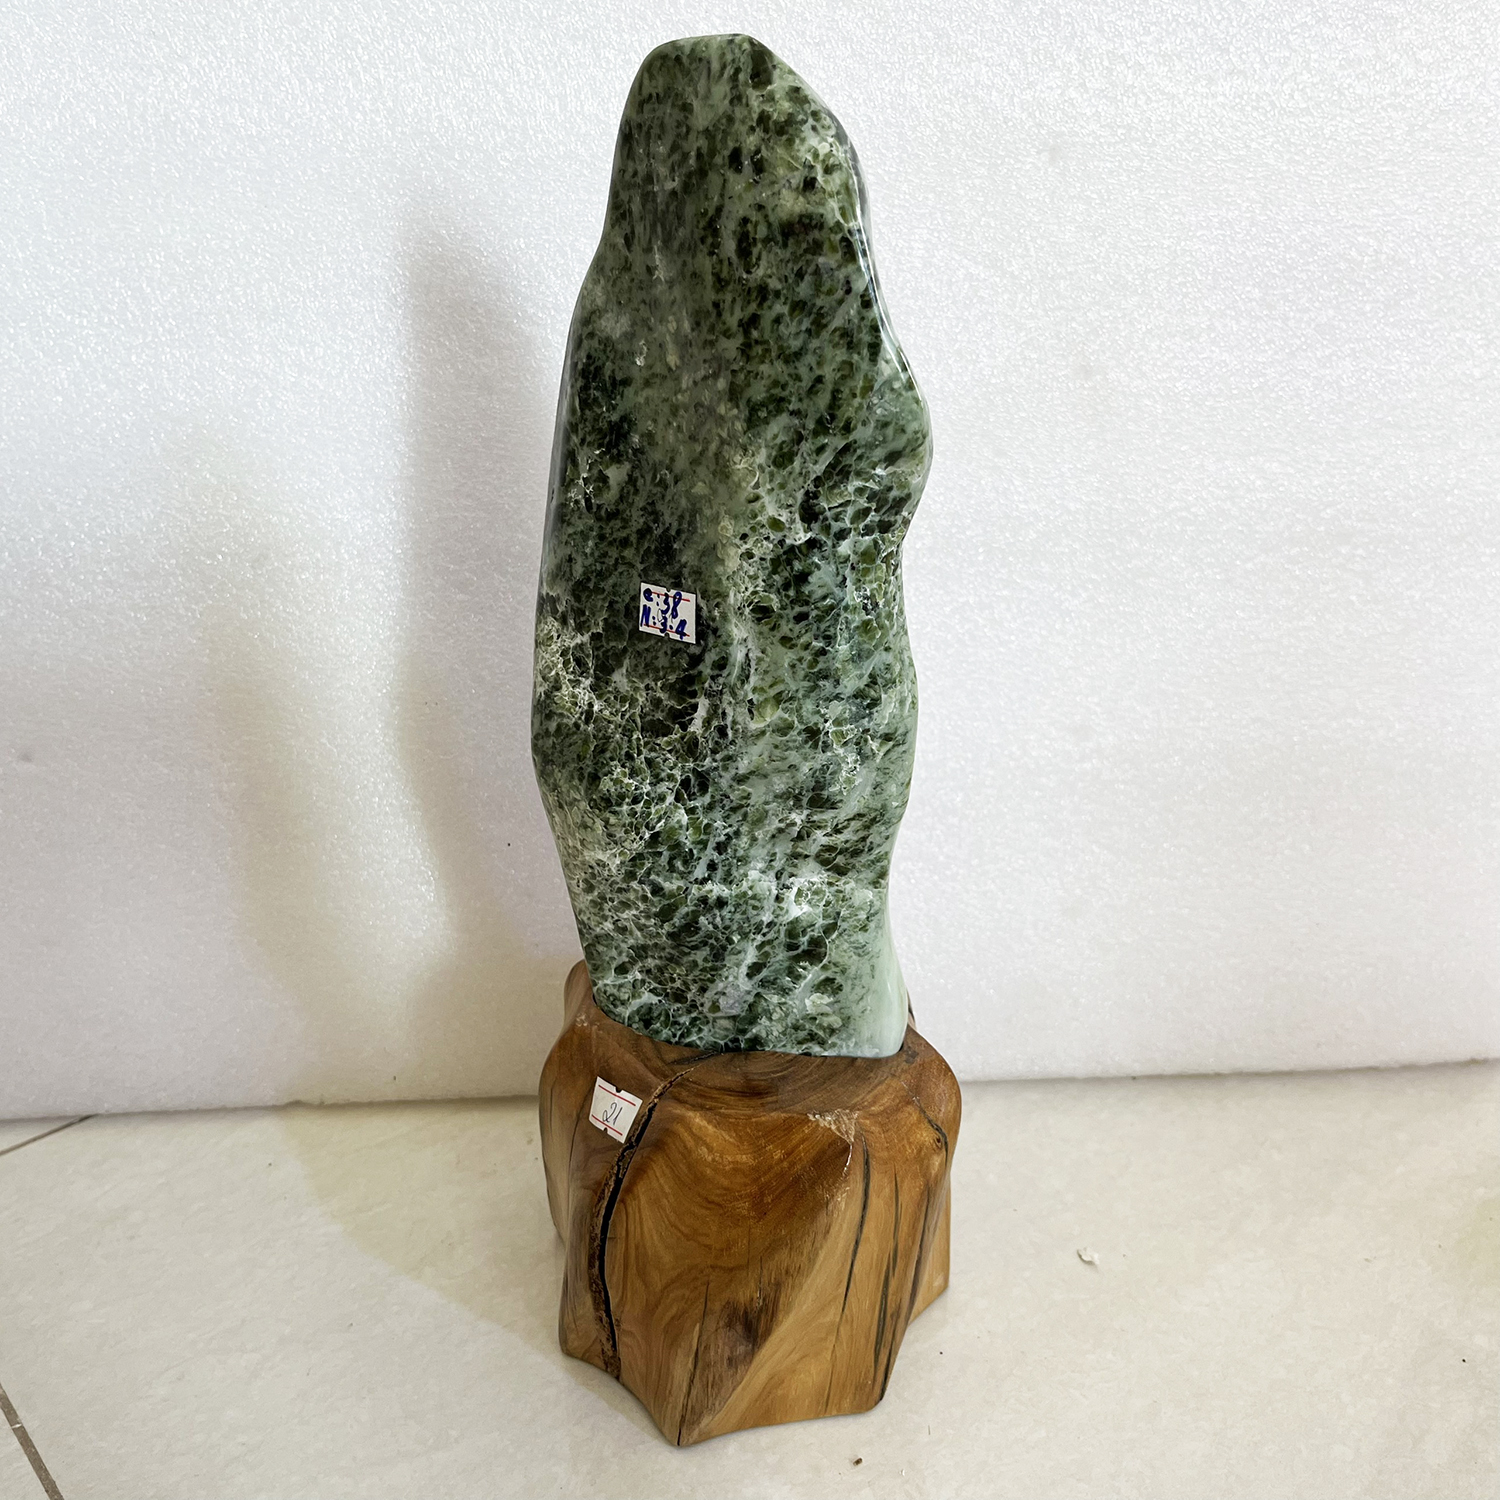 Cây đá phong thủy tự nhiên màu xanh lá cao 32 cm nặng 4 kg cả chân đế gỗ rừng tự nhiên